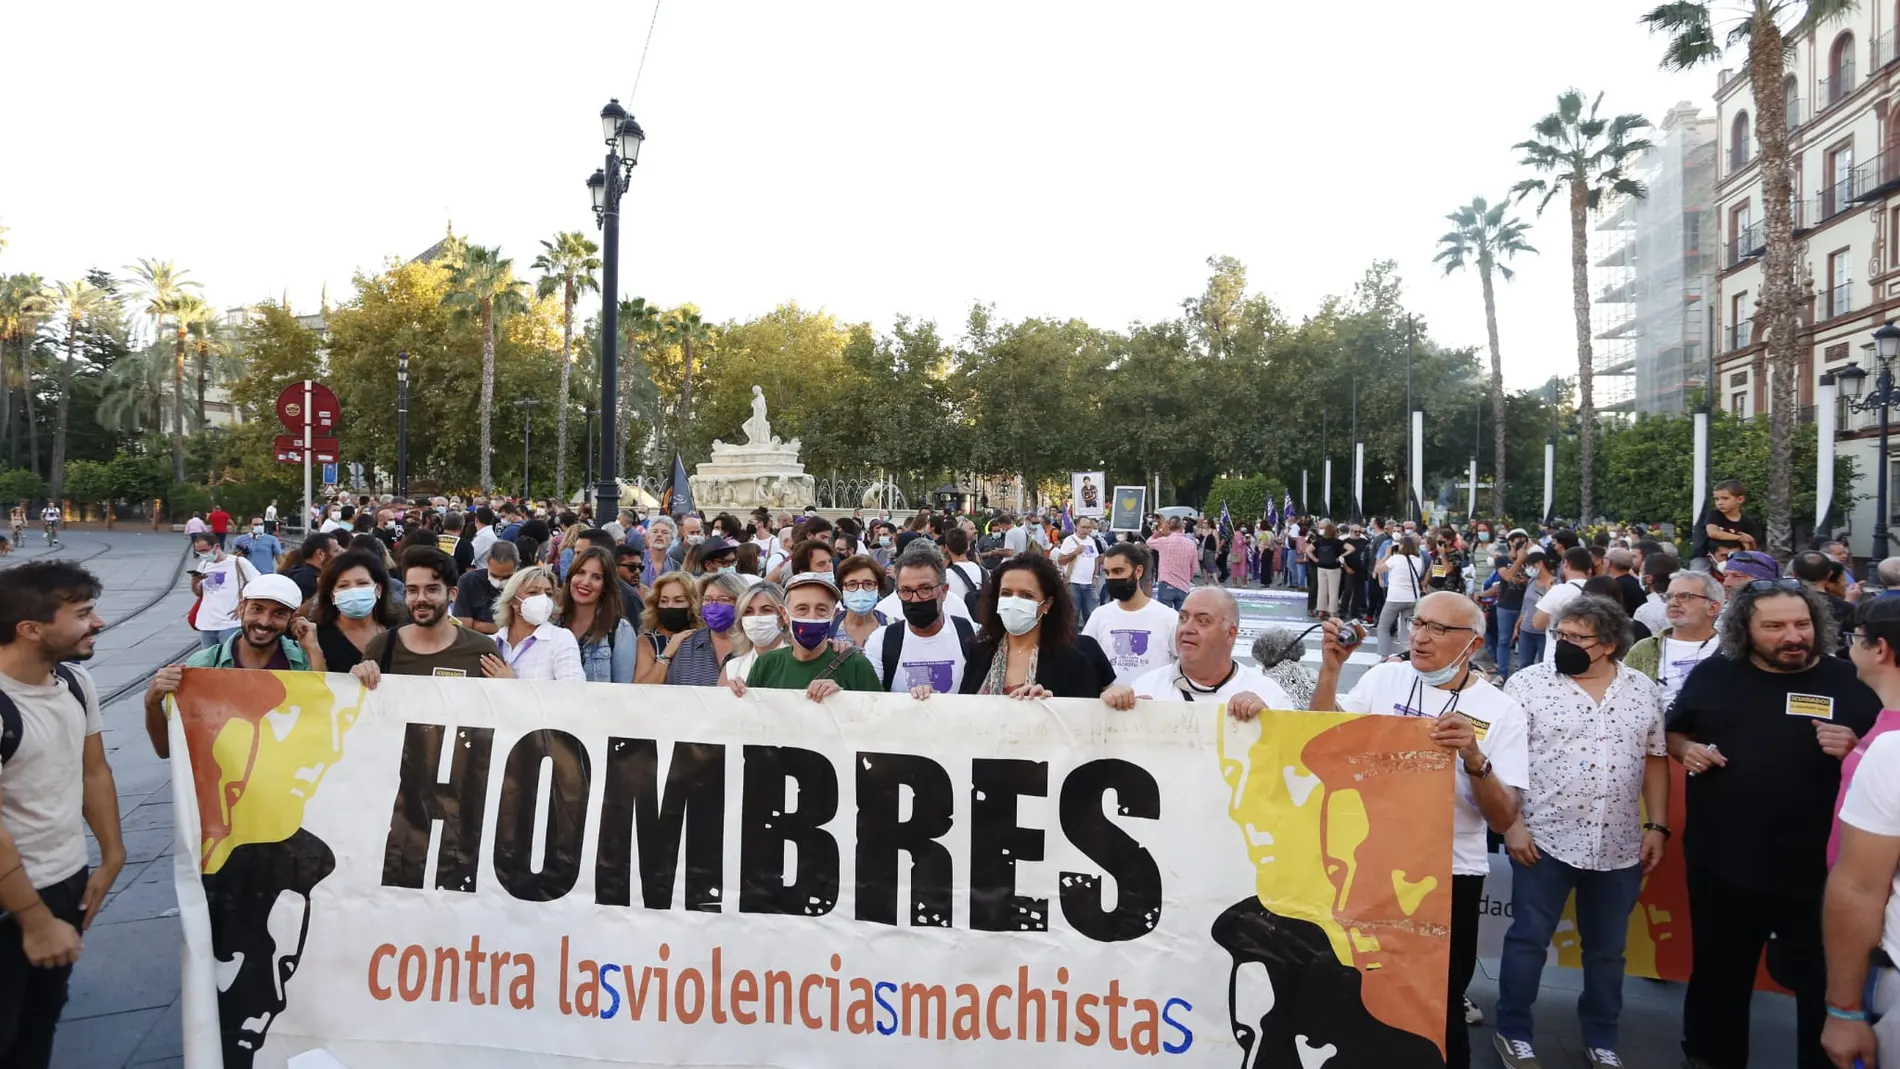 La marcha partió desde la Puerta de Jerez de Sevilla